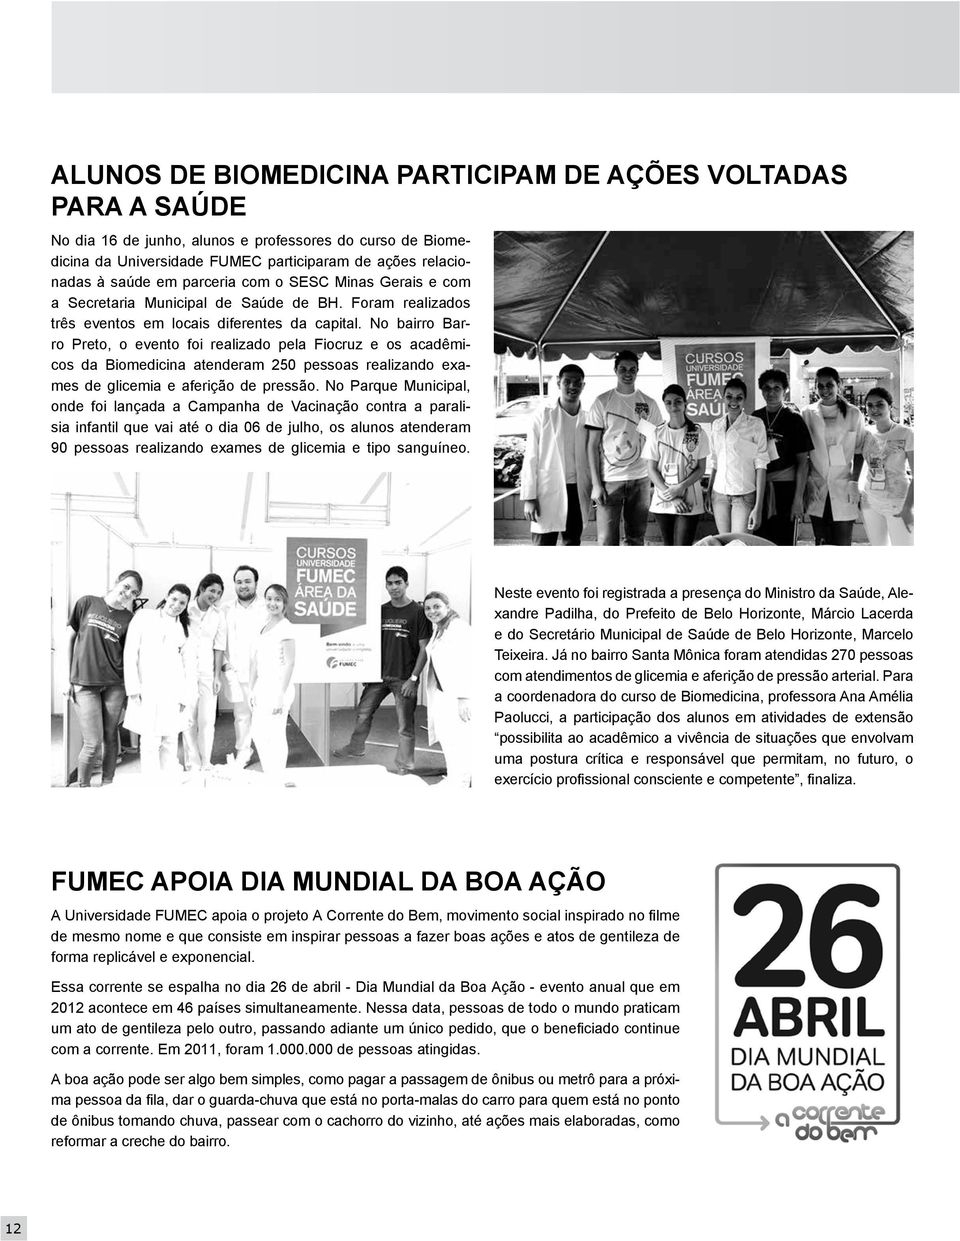 No bairro Barro Preto, o evento foi realizado pela Fiocruz e os acadêmicos da Biomedicina atenderam 250 pessoas realizando exames de glicemia e aferição de pressão.